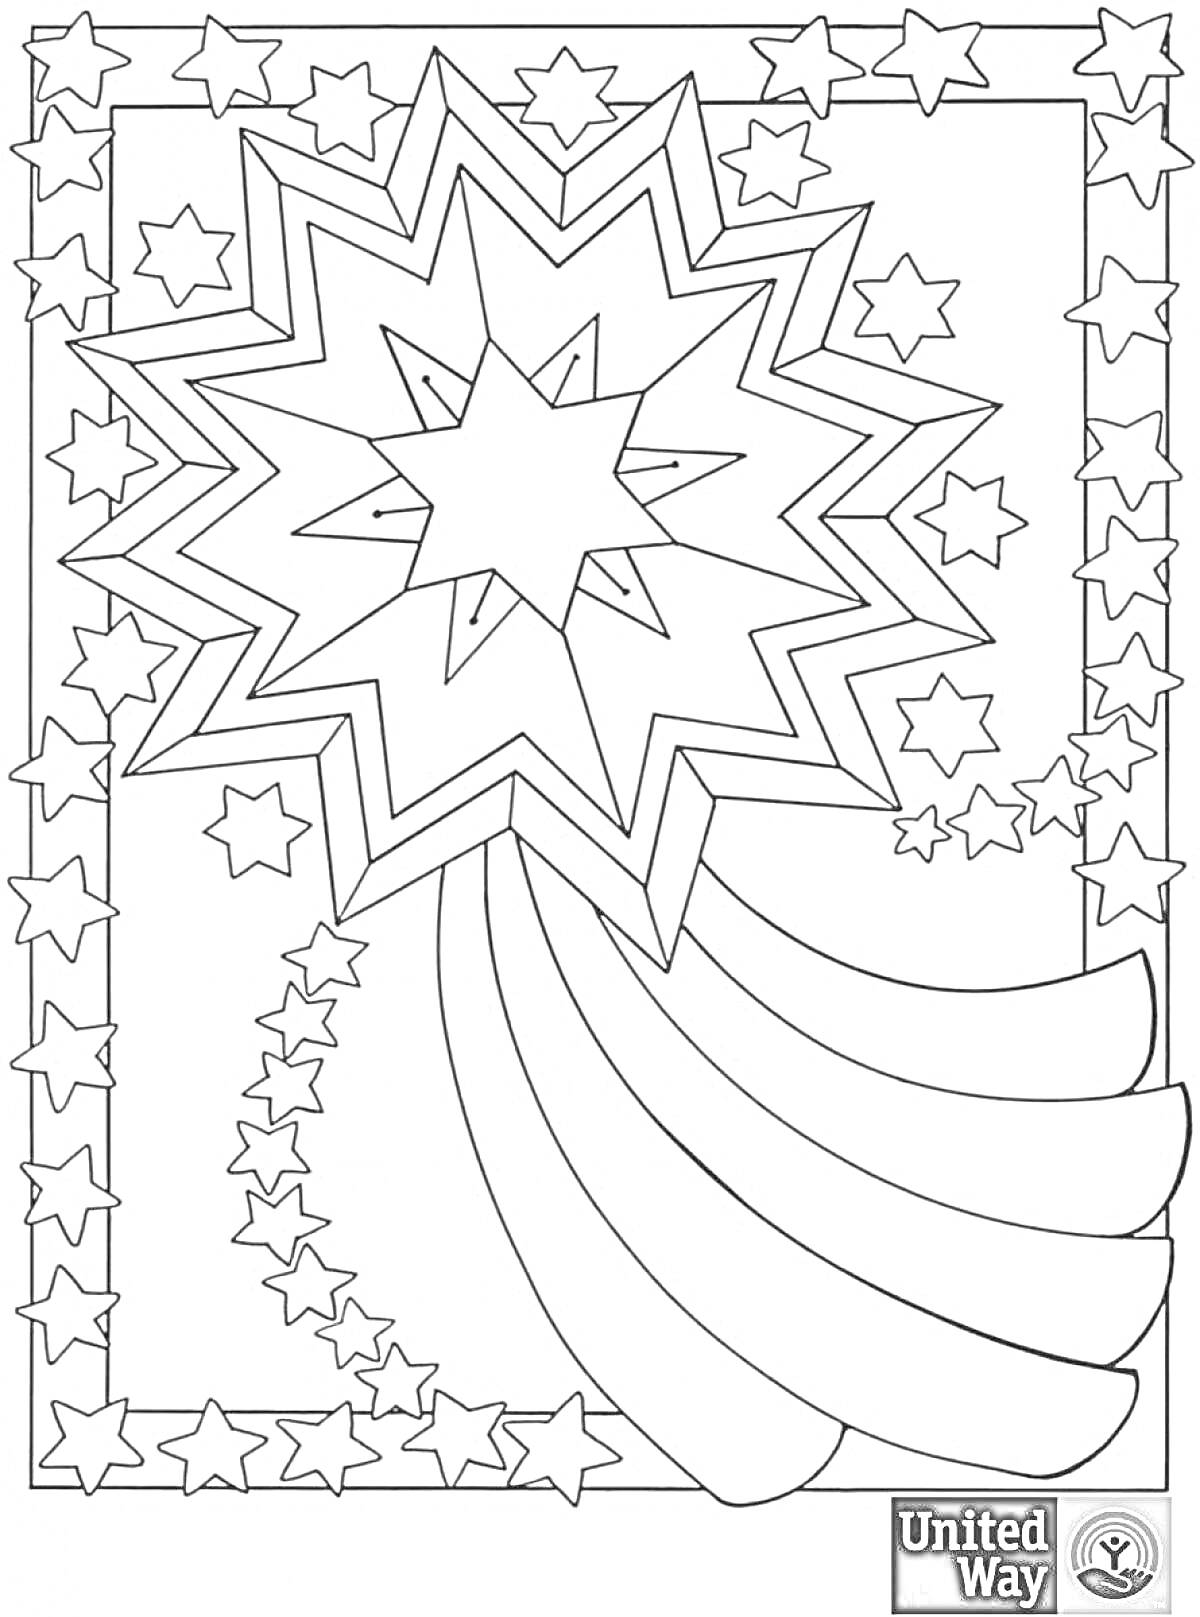 Раскраска рождественская звезда на фоне множества звезд разных размеров, хвост звезды создающий ореол струй, звезды в рамке.